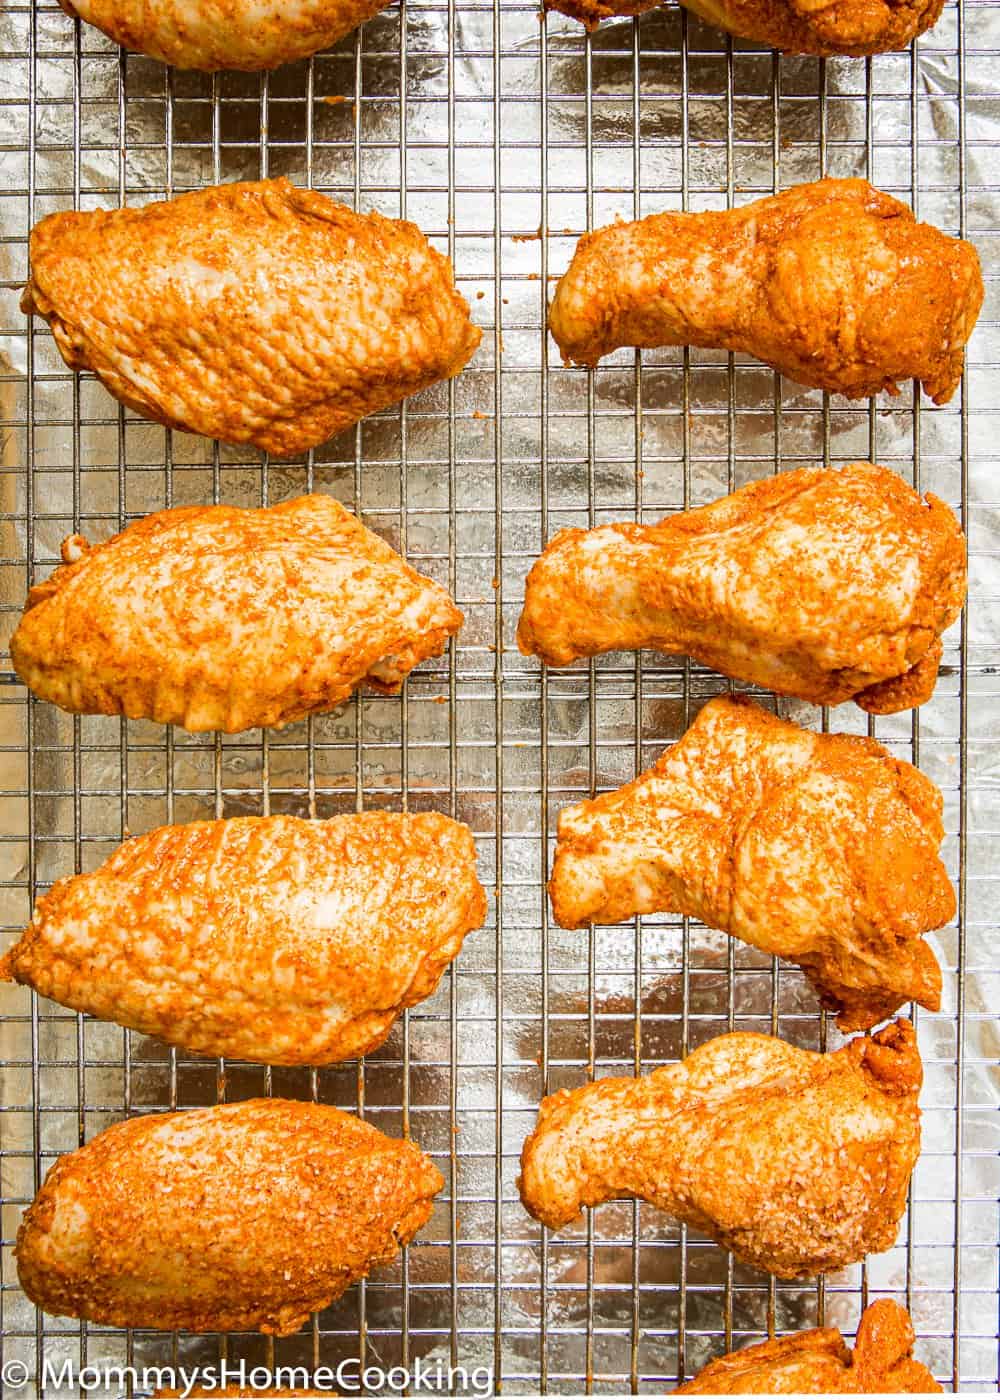 chicken wings in a baking sheet